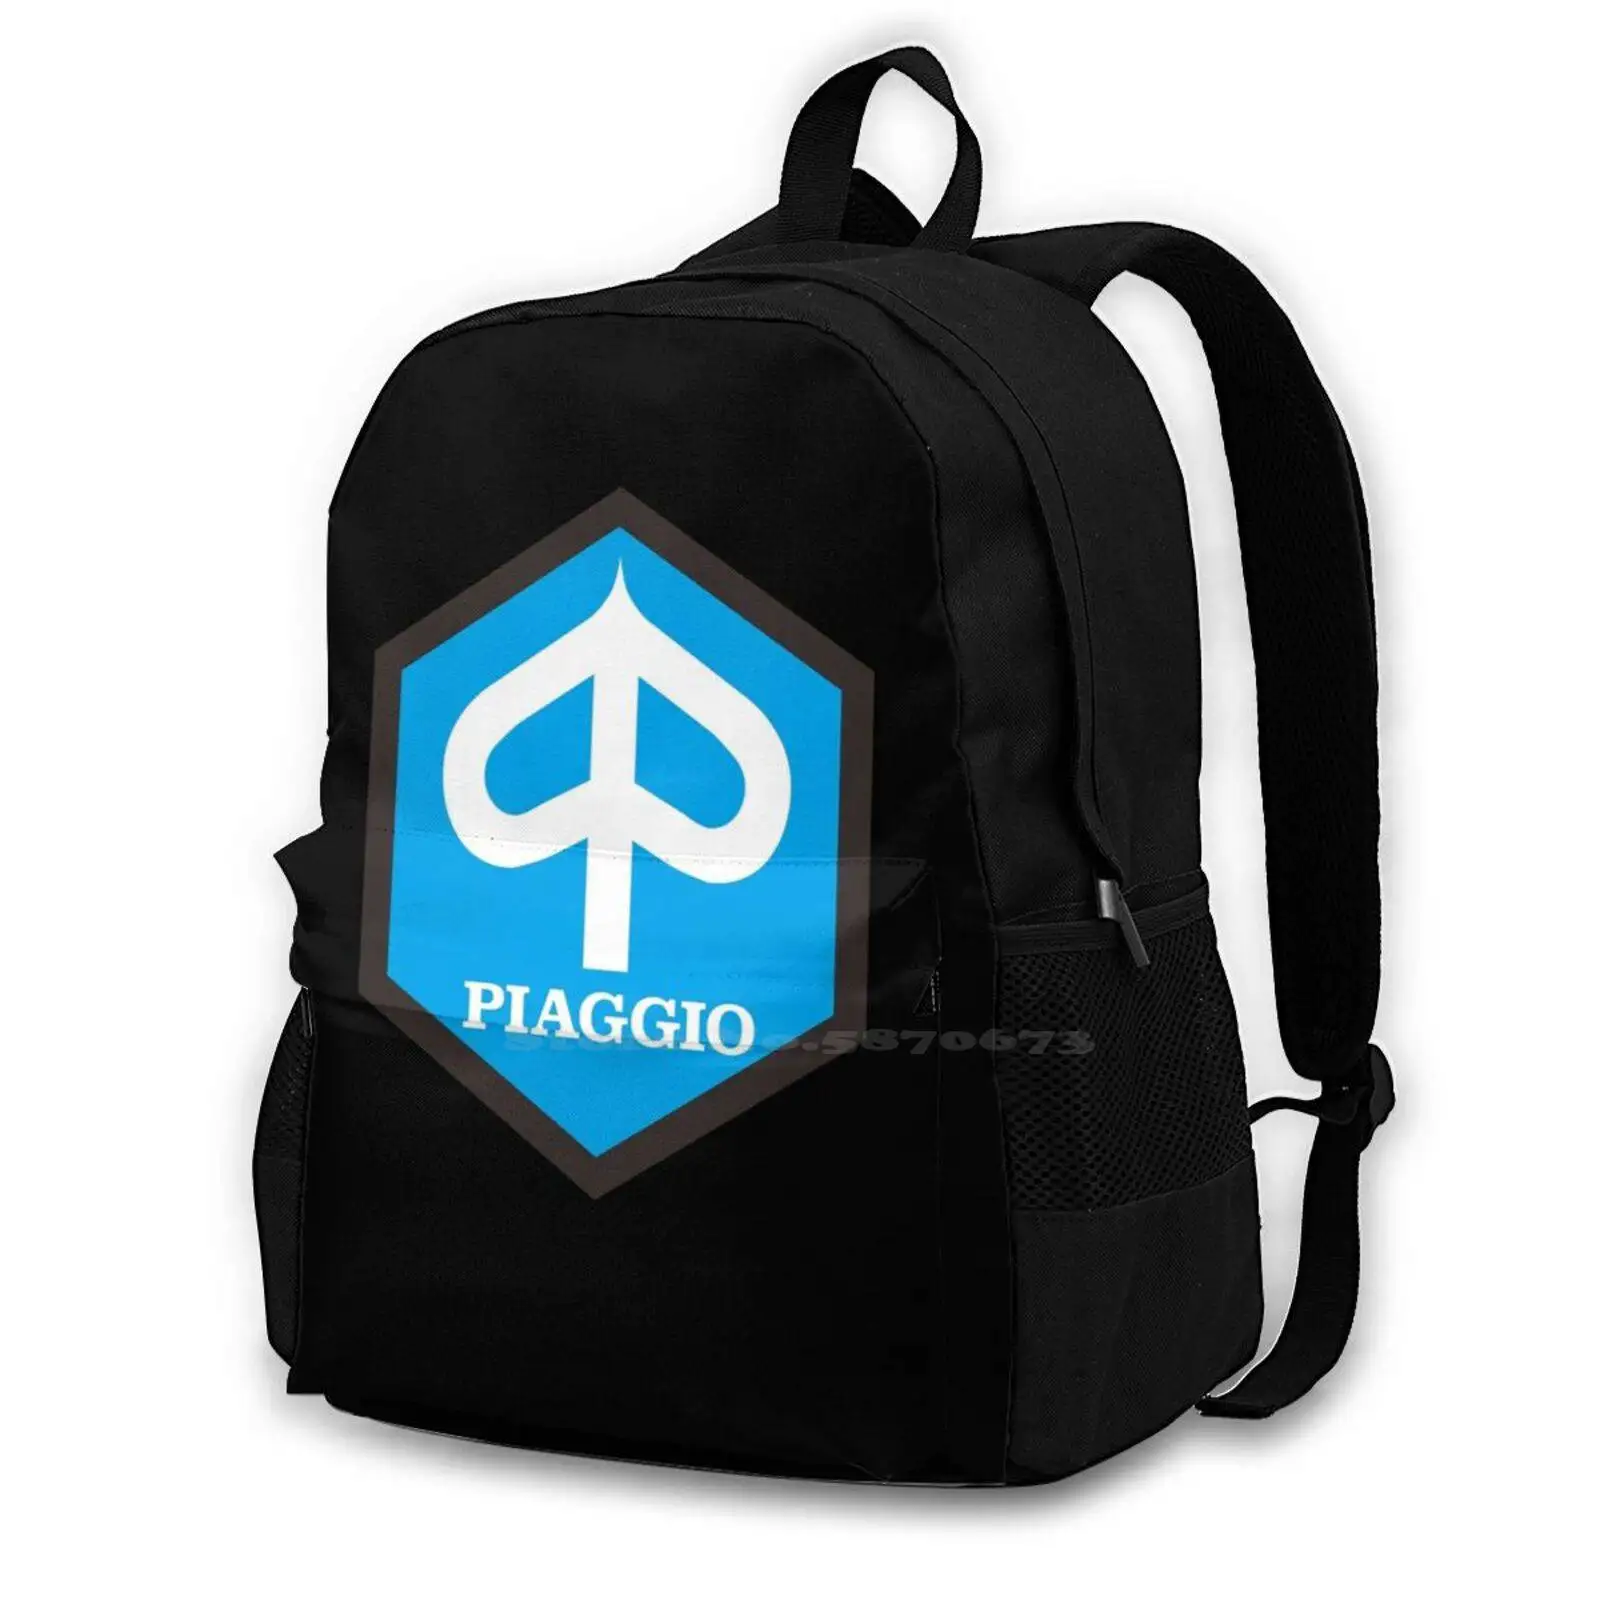 

Piaggio Emblem New Arrivals Satchel Schoolbag Bags Backpack Piaggio Emblem Piaggio Emblem Piaggio Emblem Piaggio Emblem Stuff